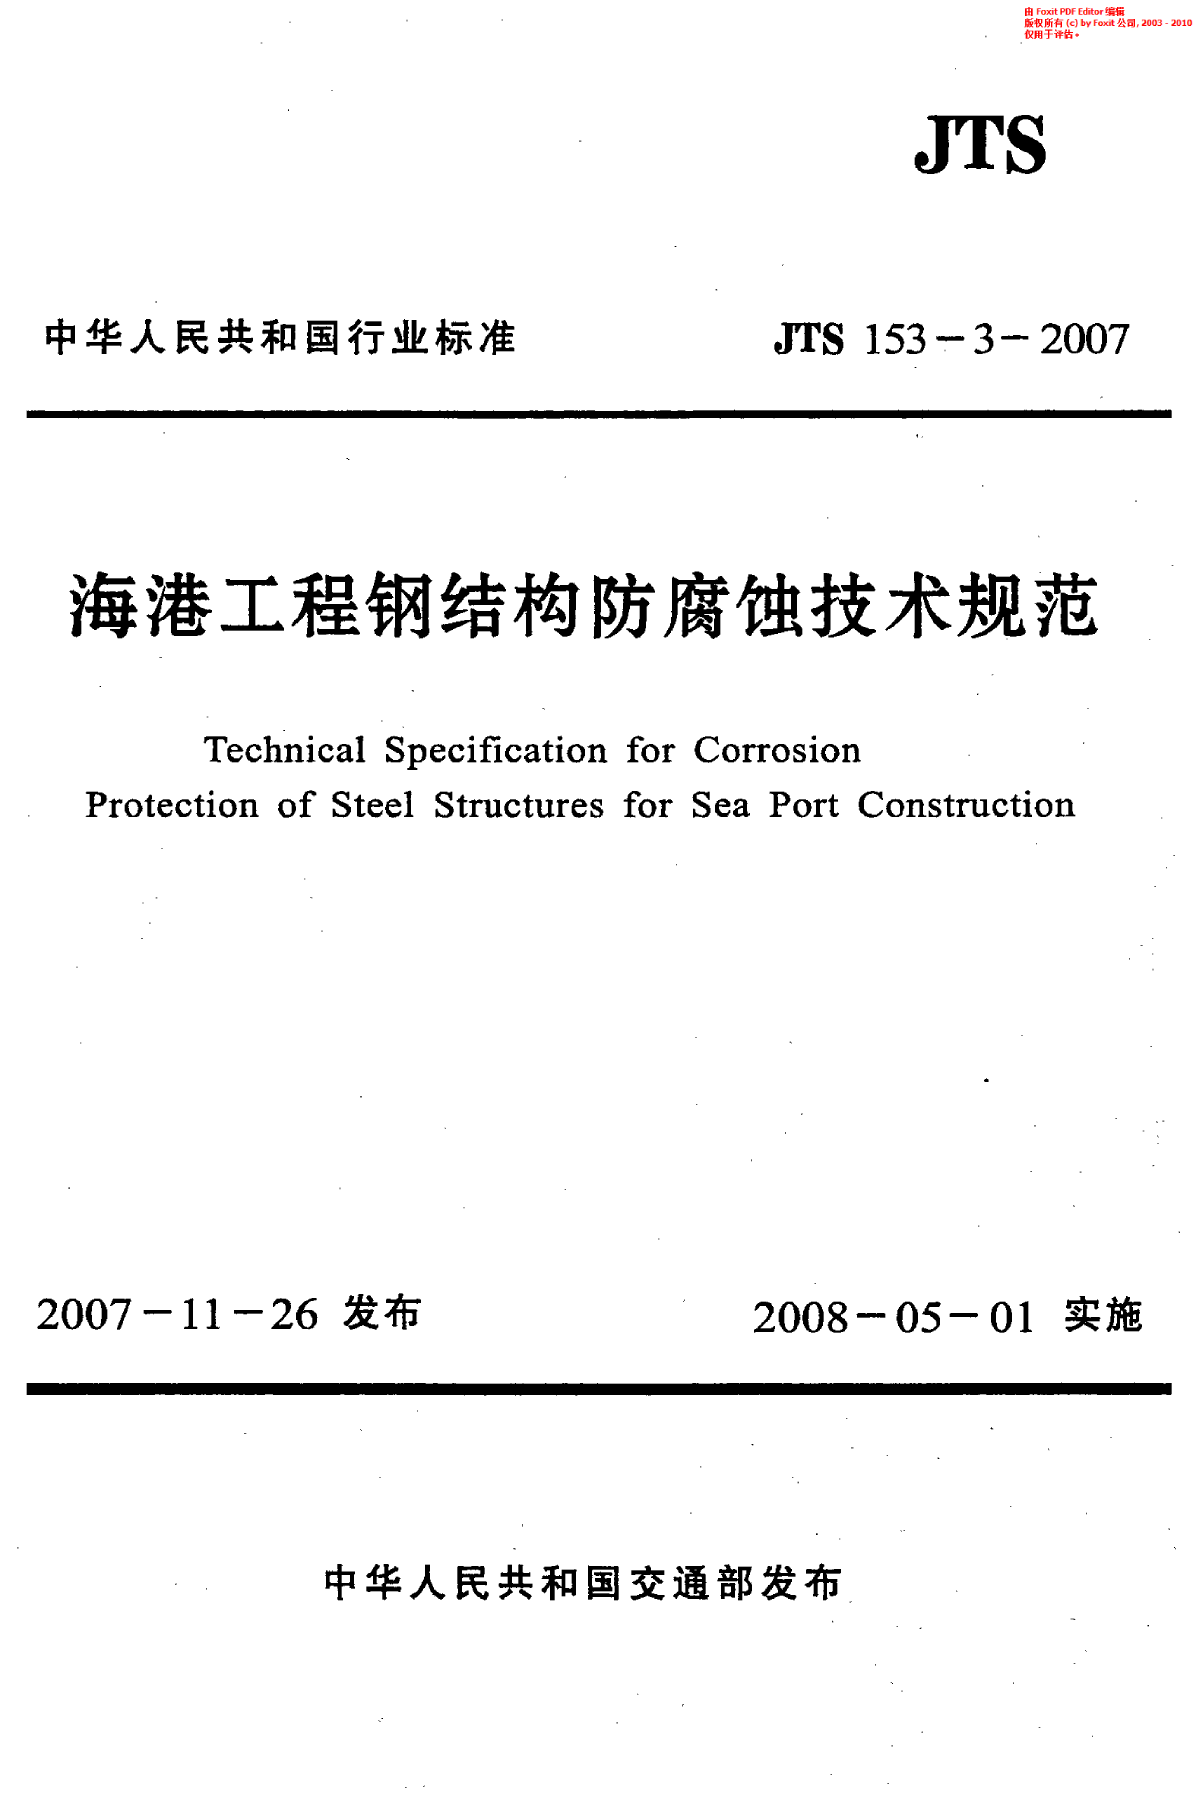 《海港工程钢结构防腐蚀技术规范》(JTS 153-3-2007)